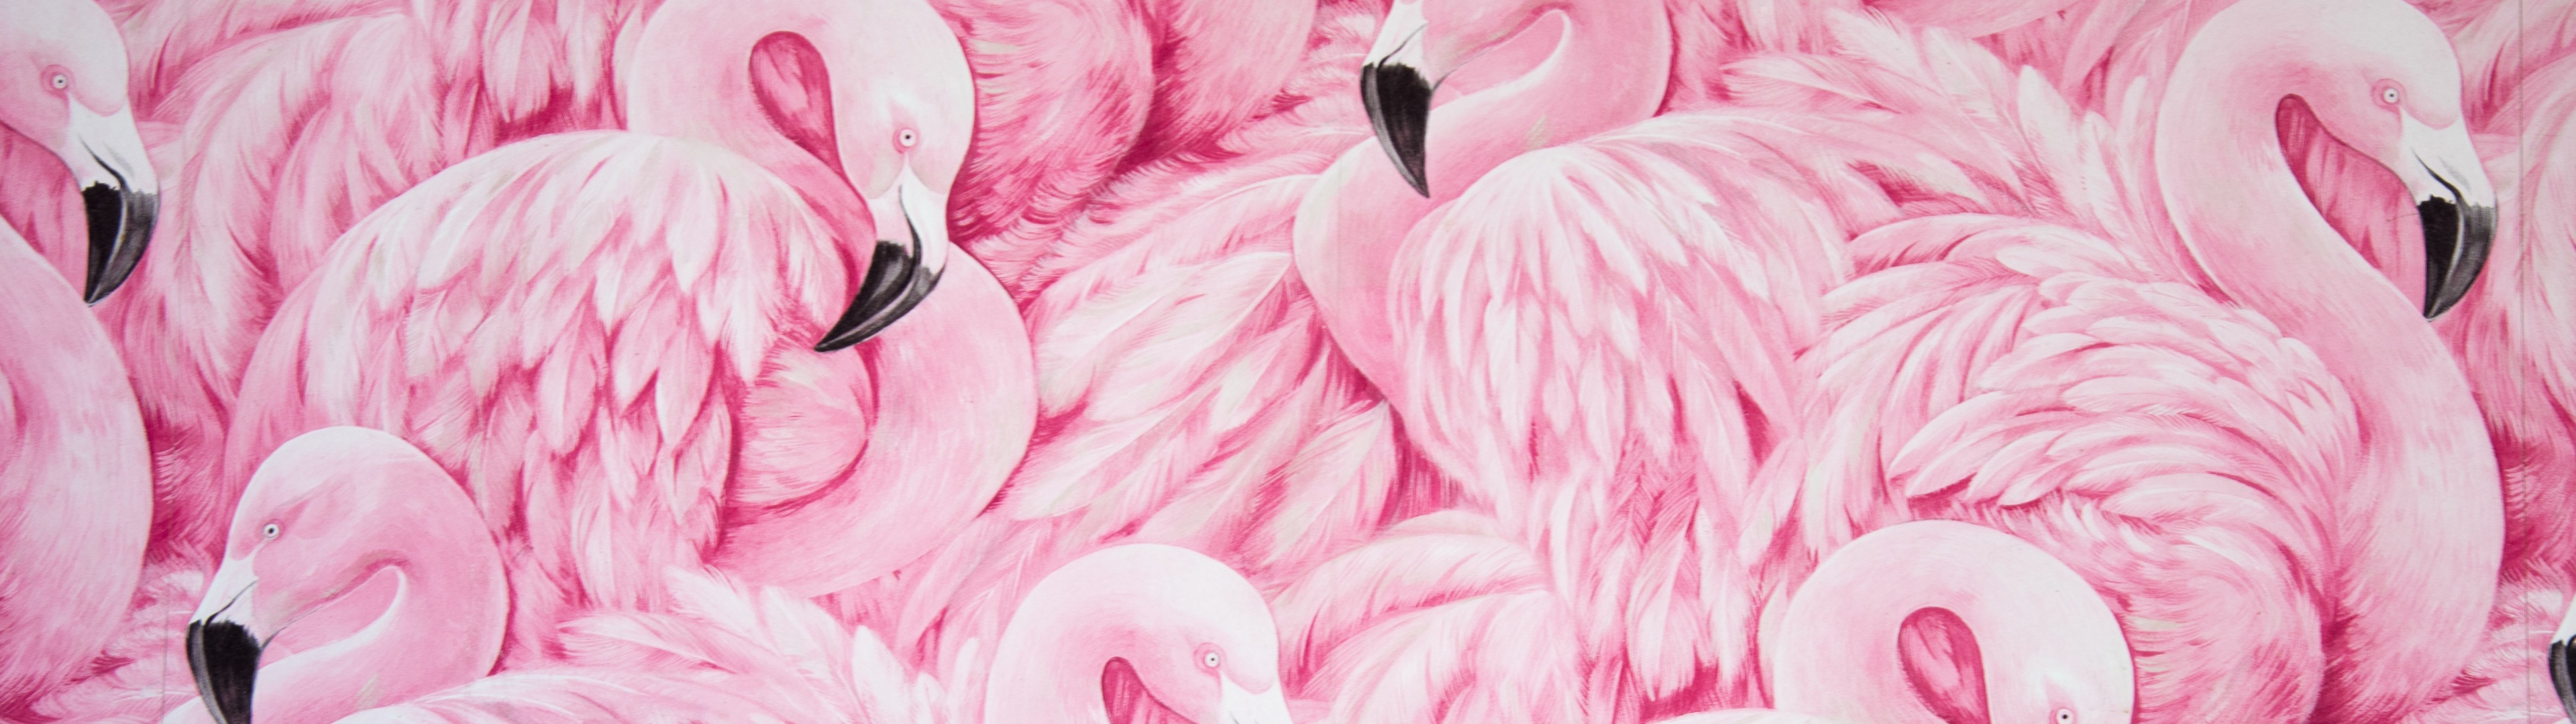 Đến và chiêm ngưỡng hình ảnh đầy màu sắc của đàn chim flamingo, với những chiếc mỏ dài và đôi cánh xòe rộng đầy uyển chuyển. Chắc chắn bạn sẽ bị cuốn hút bởi vẻ đẹp lạ lùng của chúng.